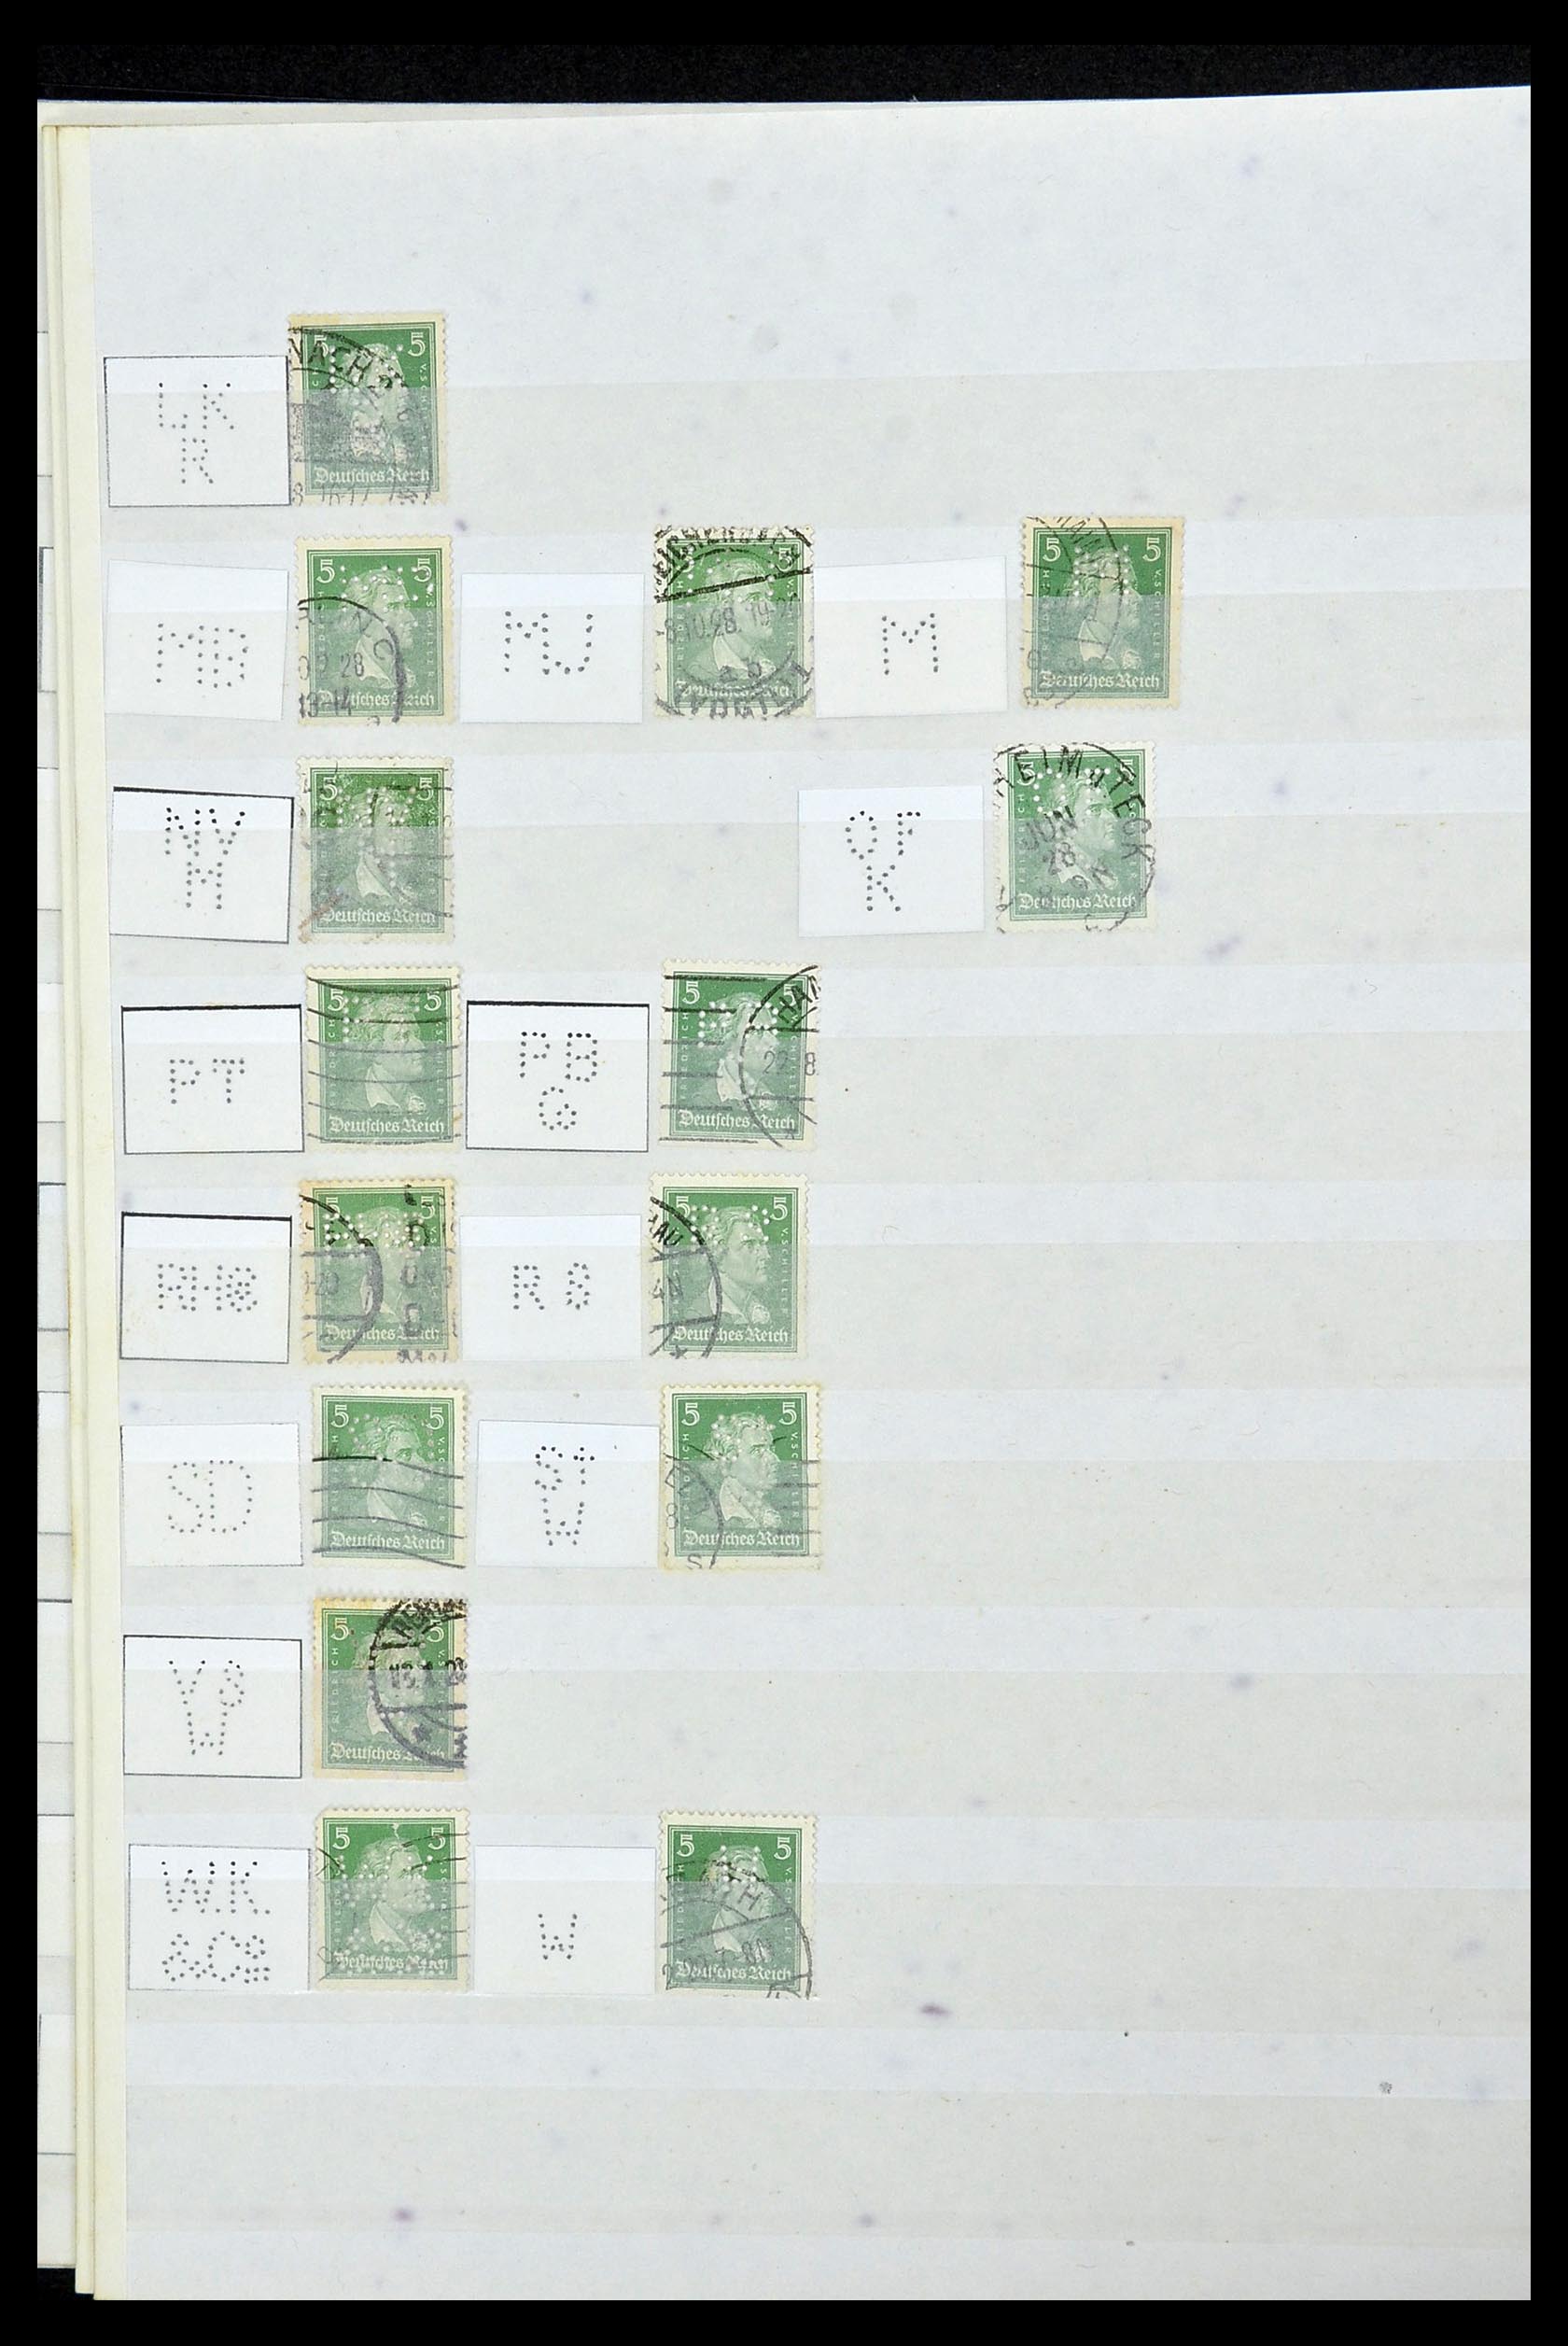 34071 060 - Stamp collection 34071 German Reich perfins 1923-1930.